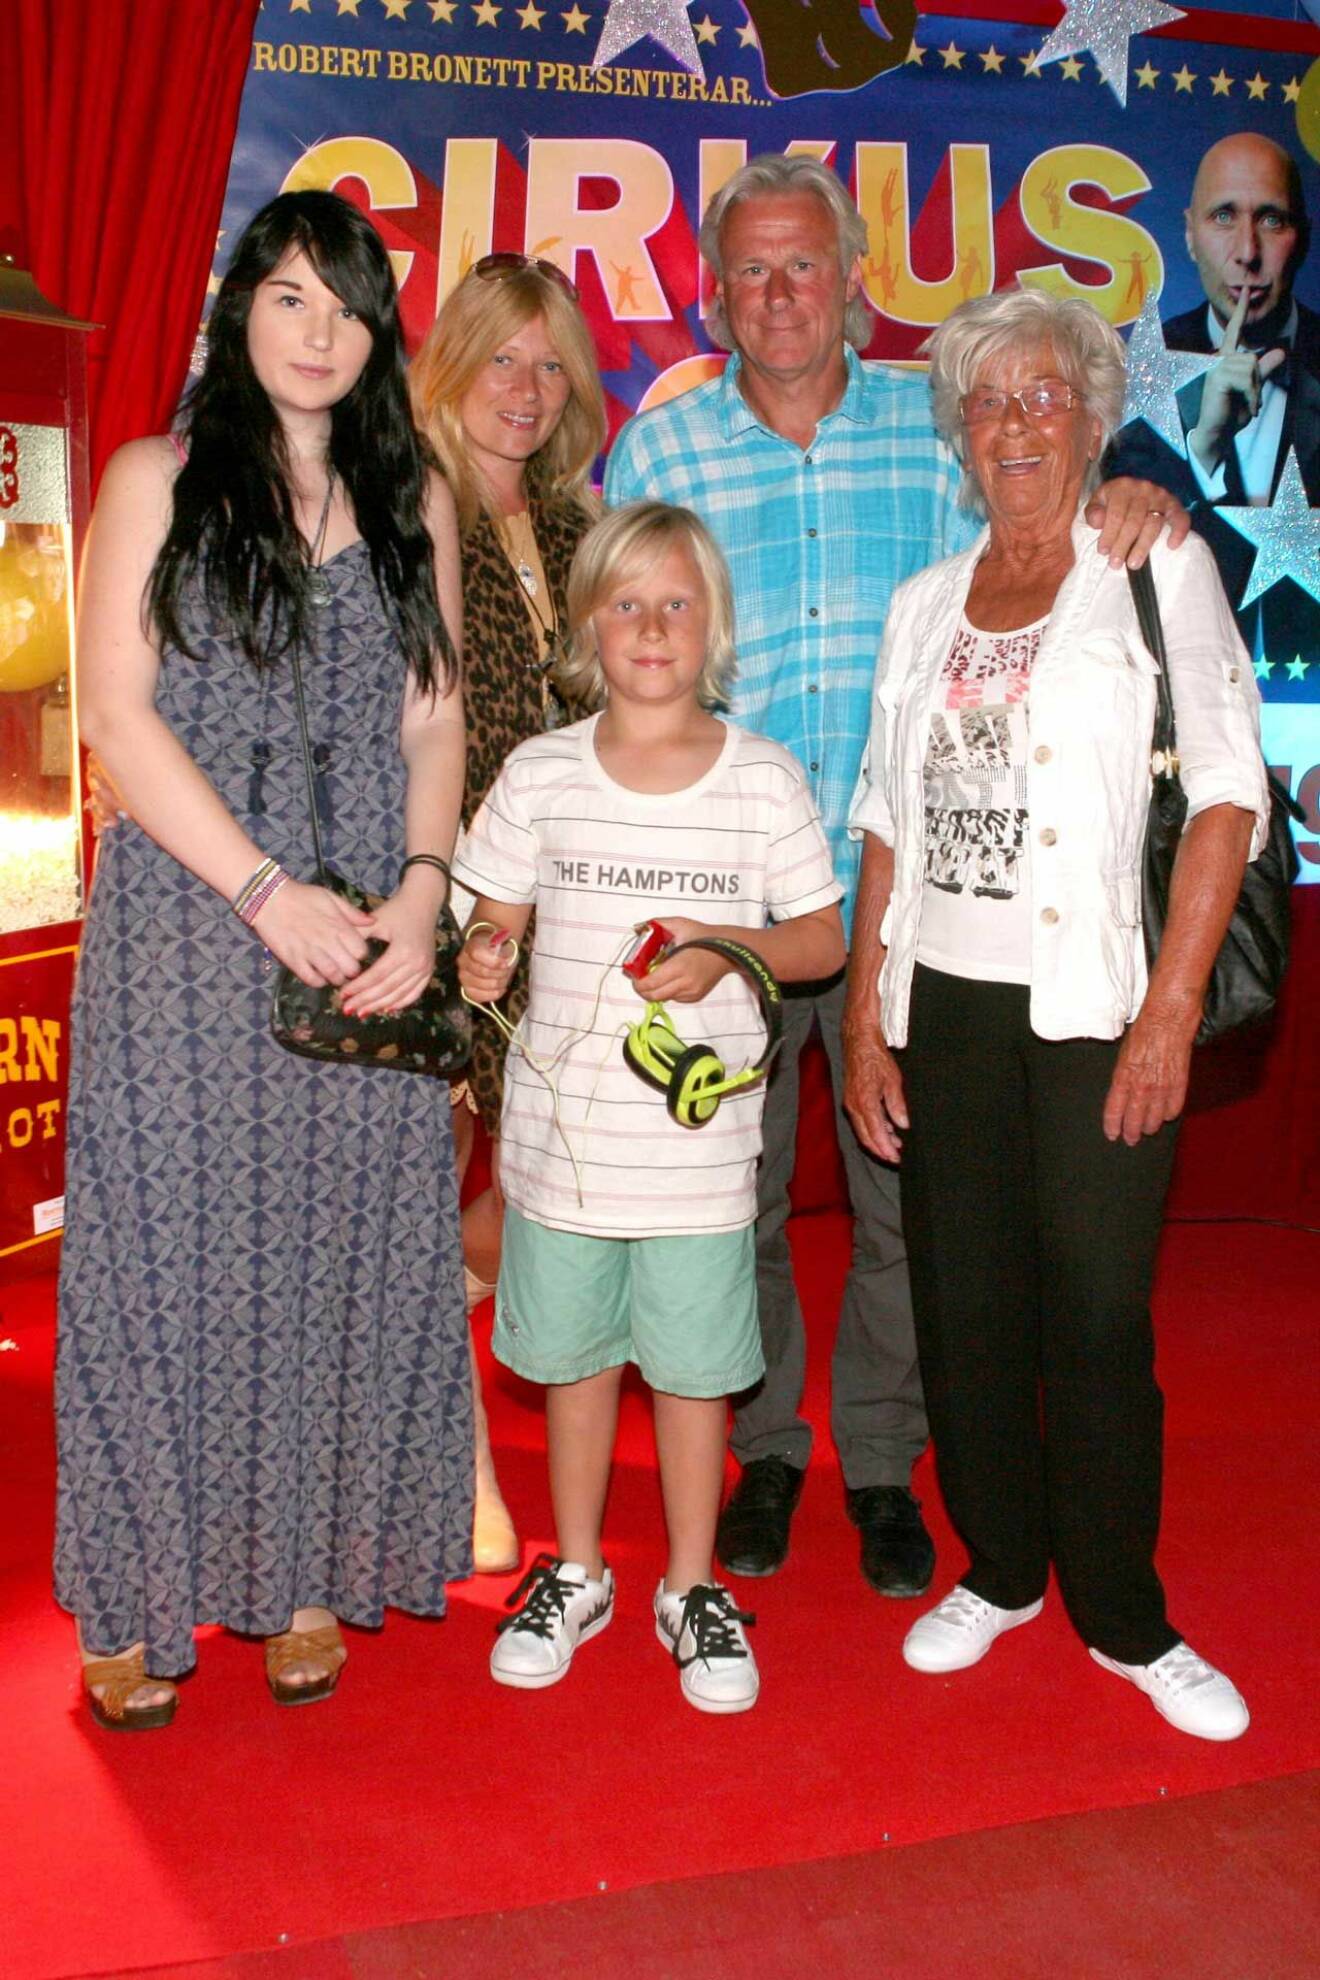 I minglet 2011 på Cirkus Scotts 75-års jubileum. Bianca, Patricia, Leo, Björn och Björns mamma Margareta. 